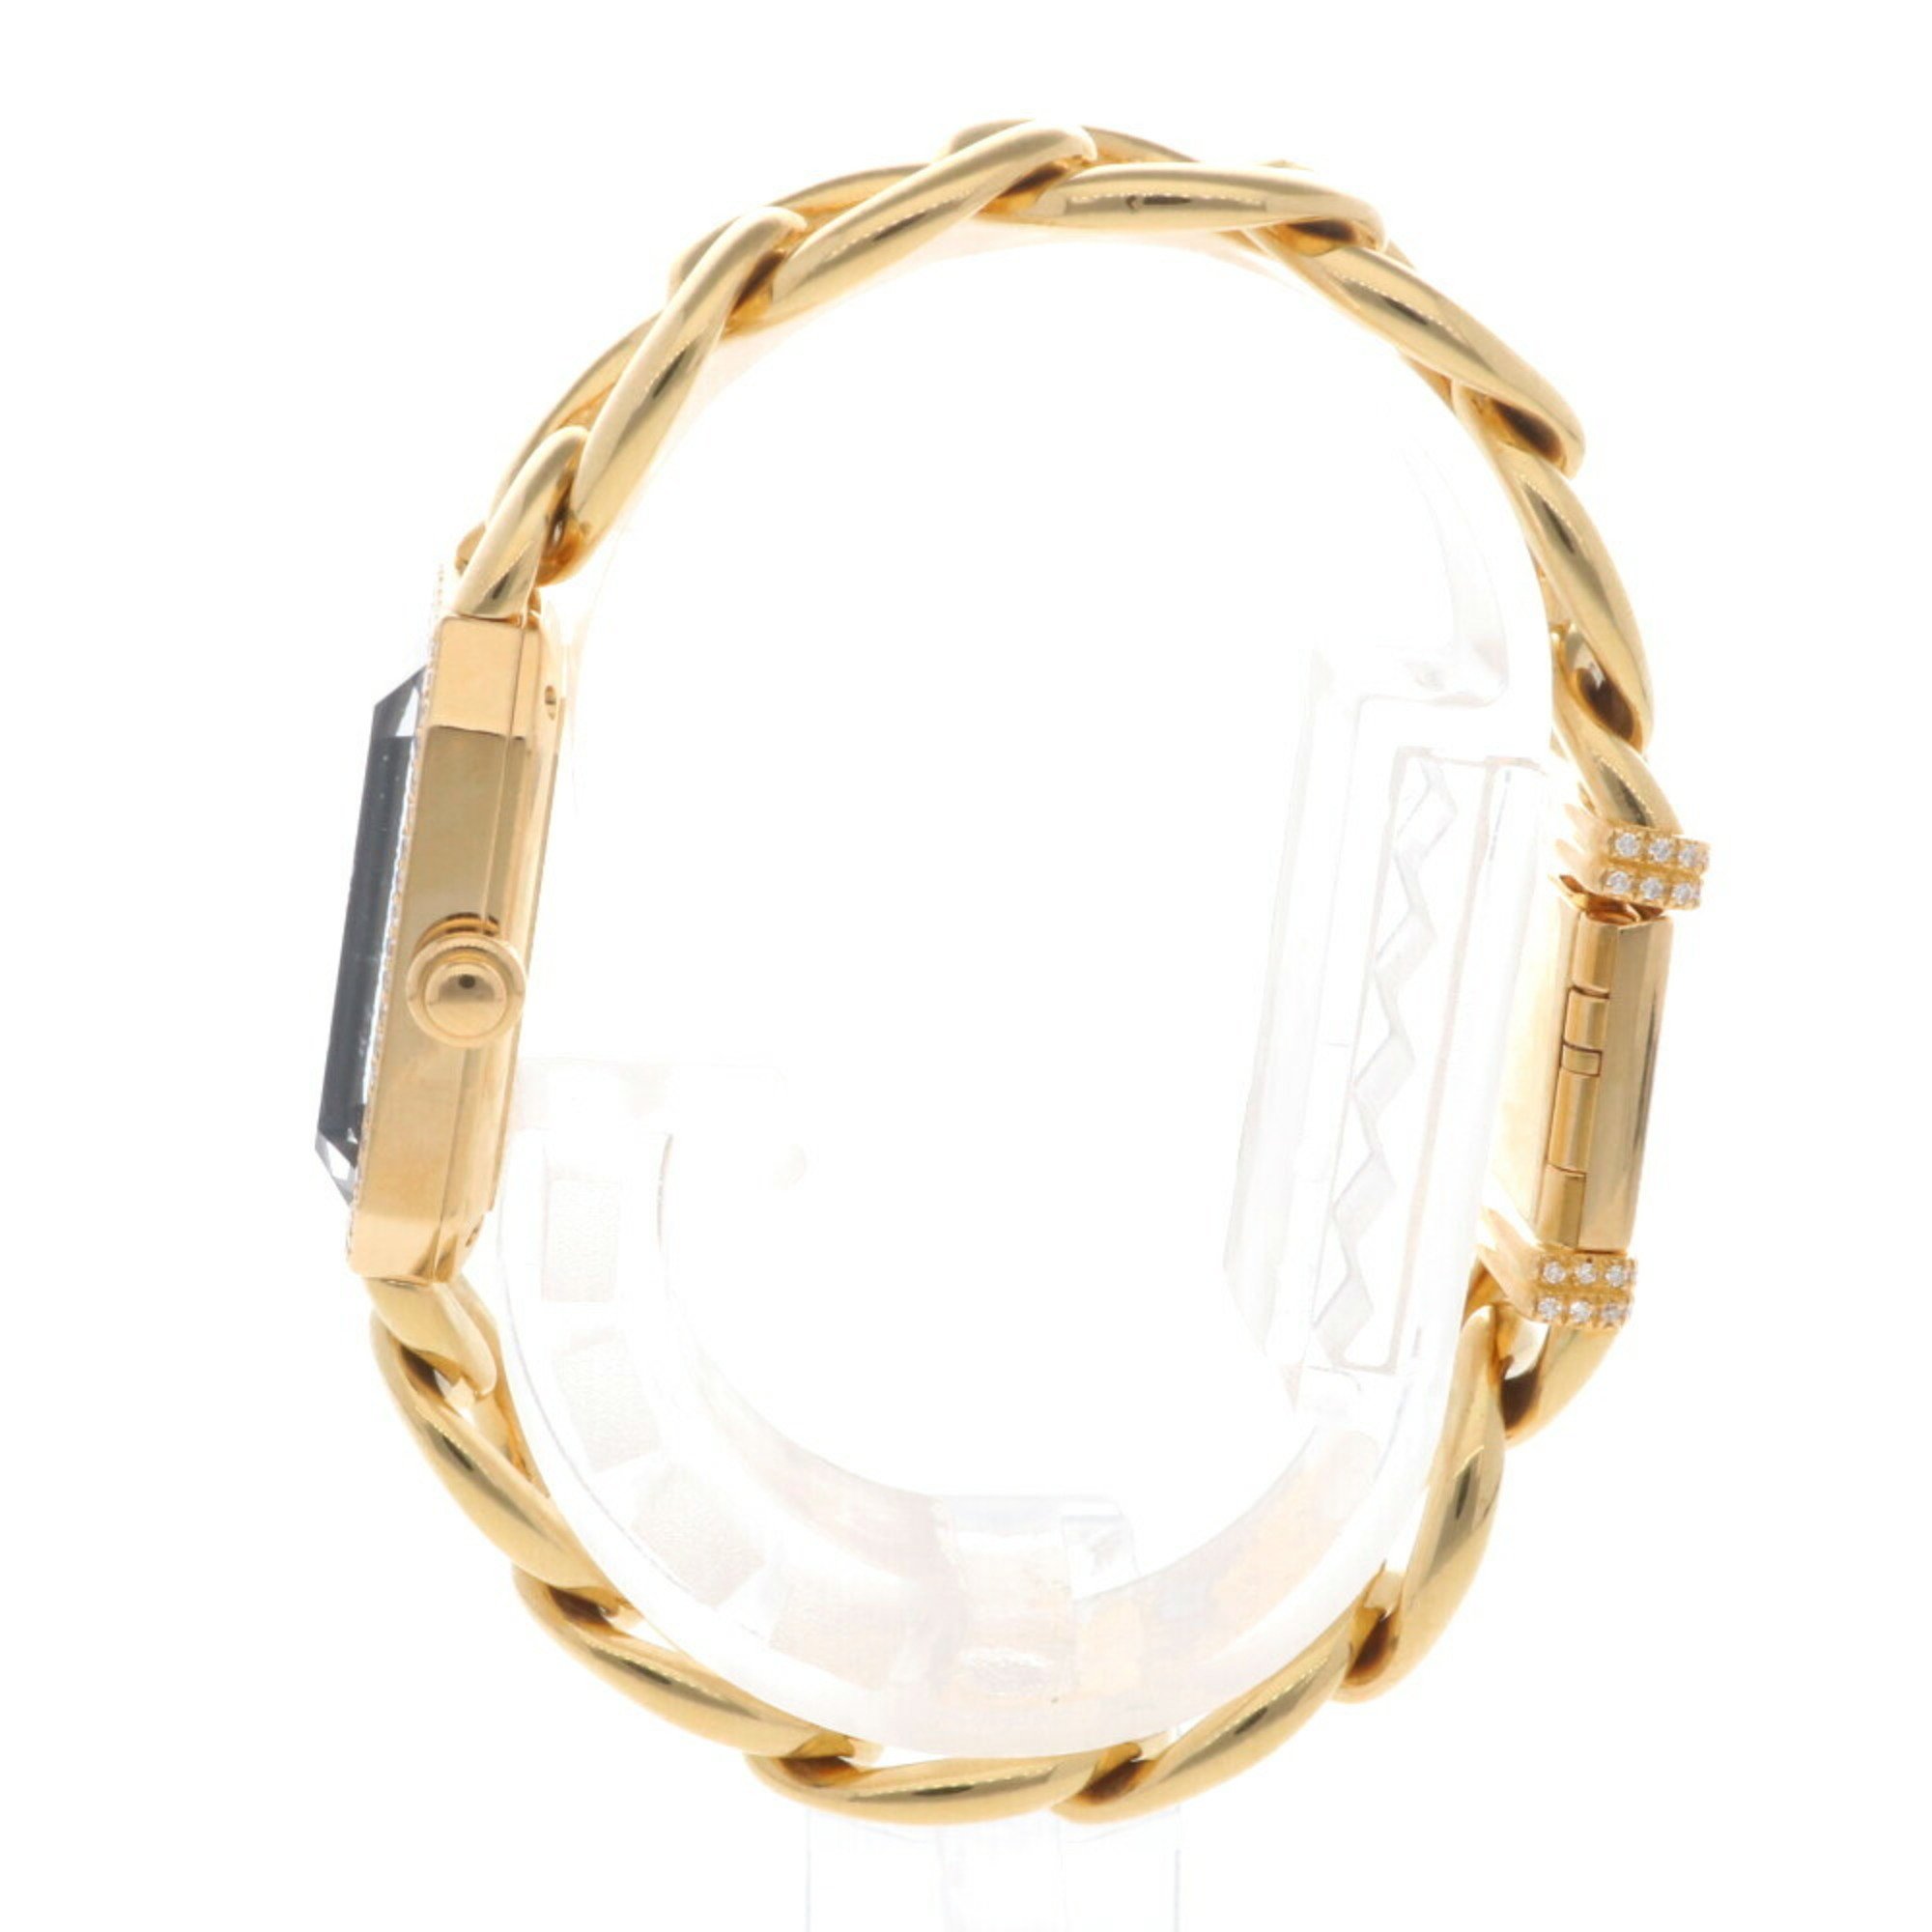 Chanel Premiere L Watch 18K Quartz Ladies CHANEL Diamond Bezel Chain Bracelet